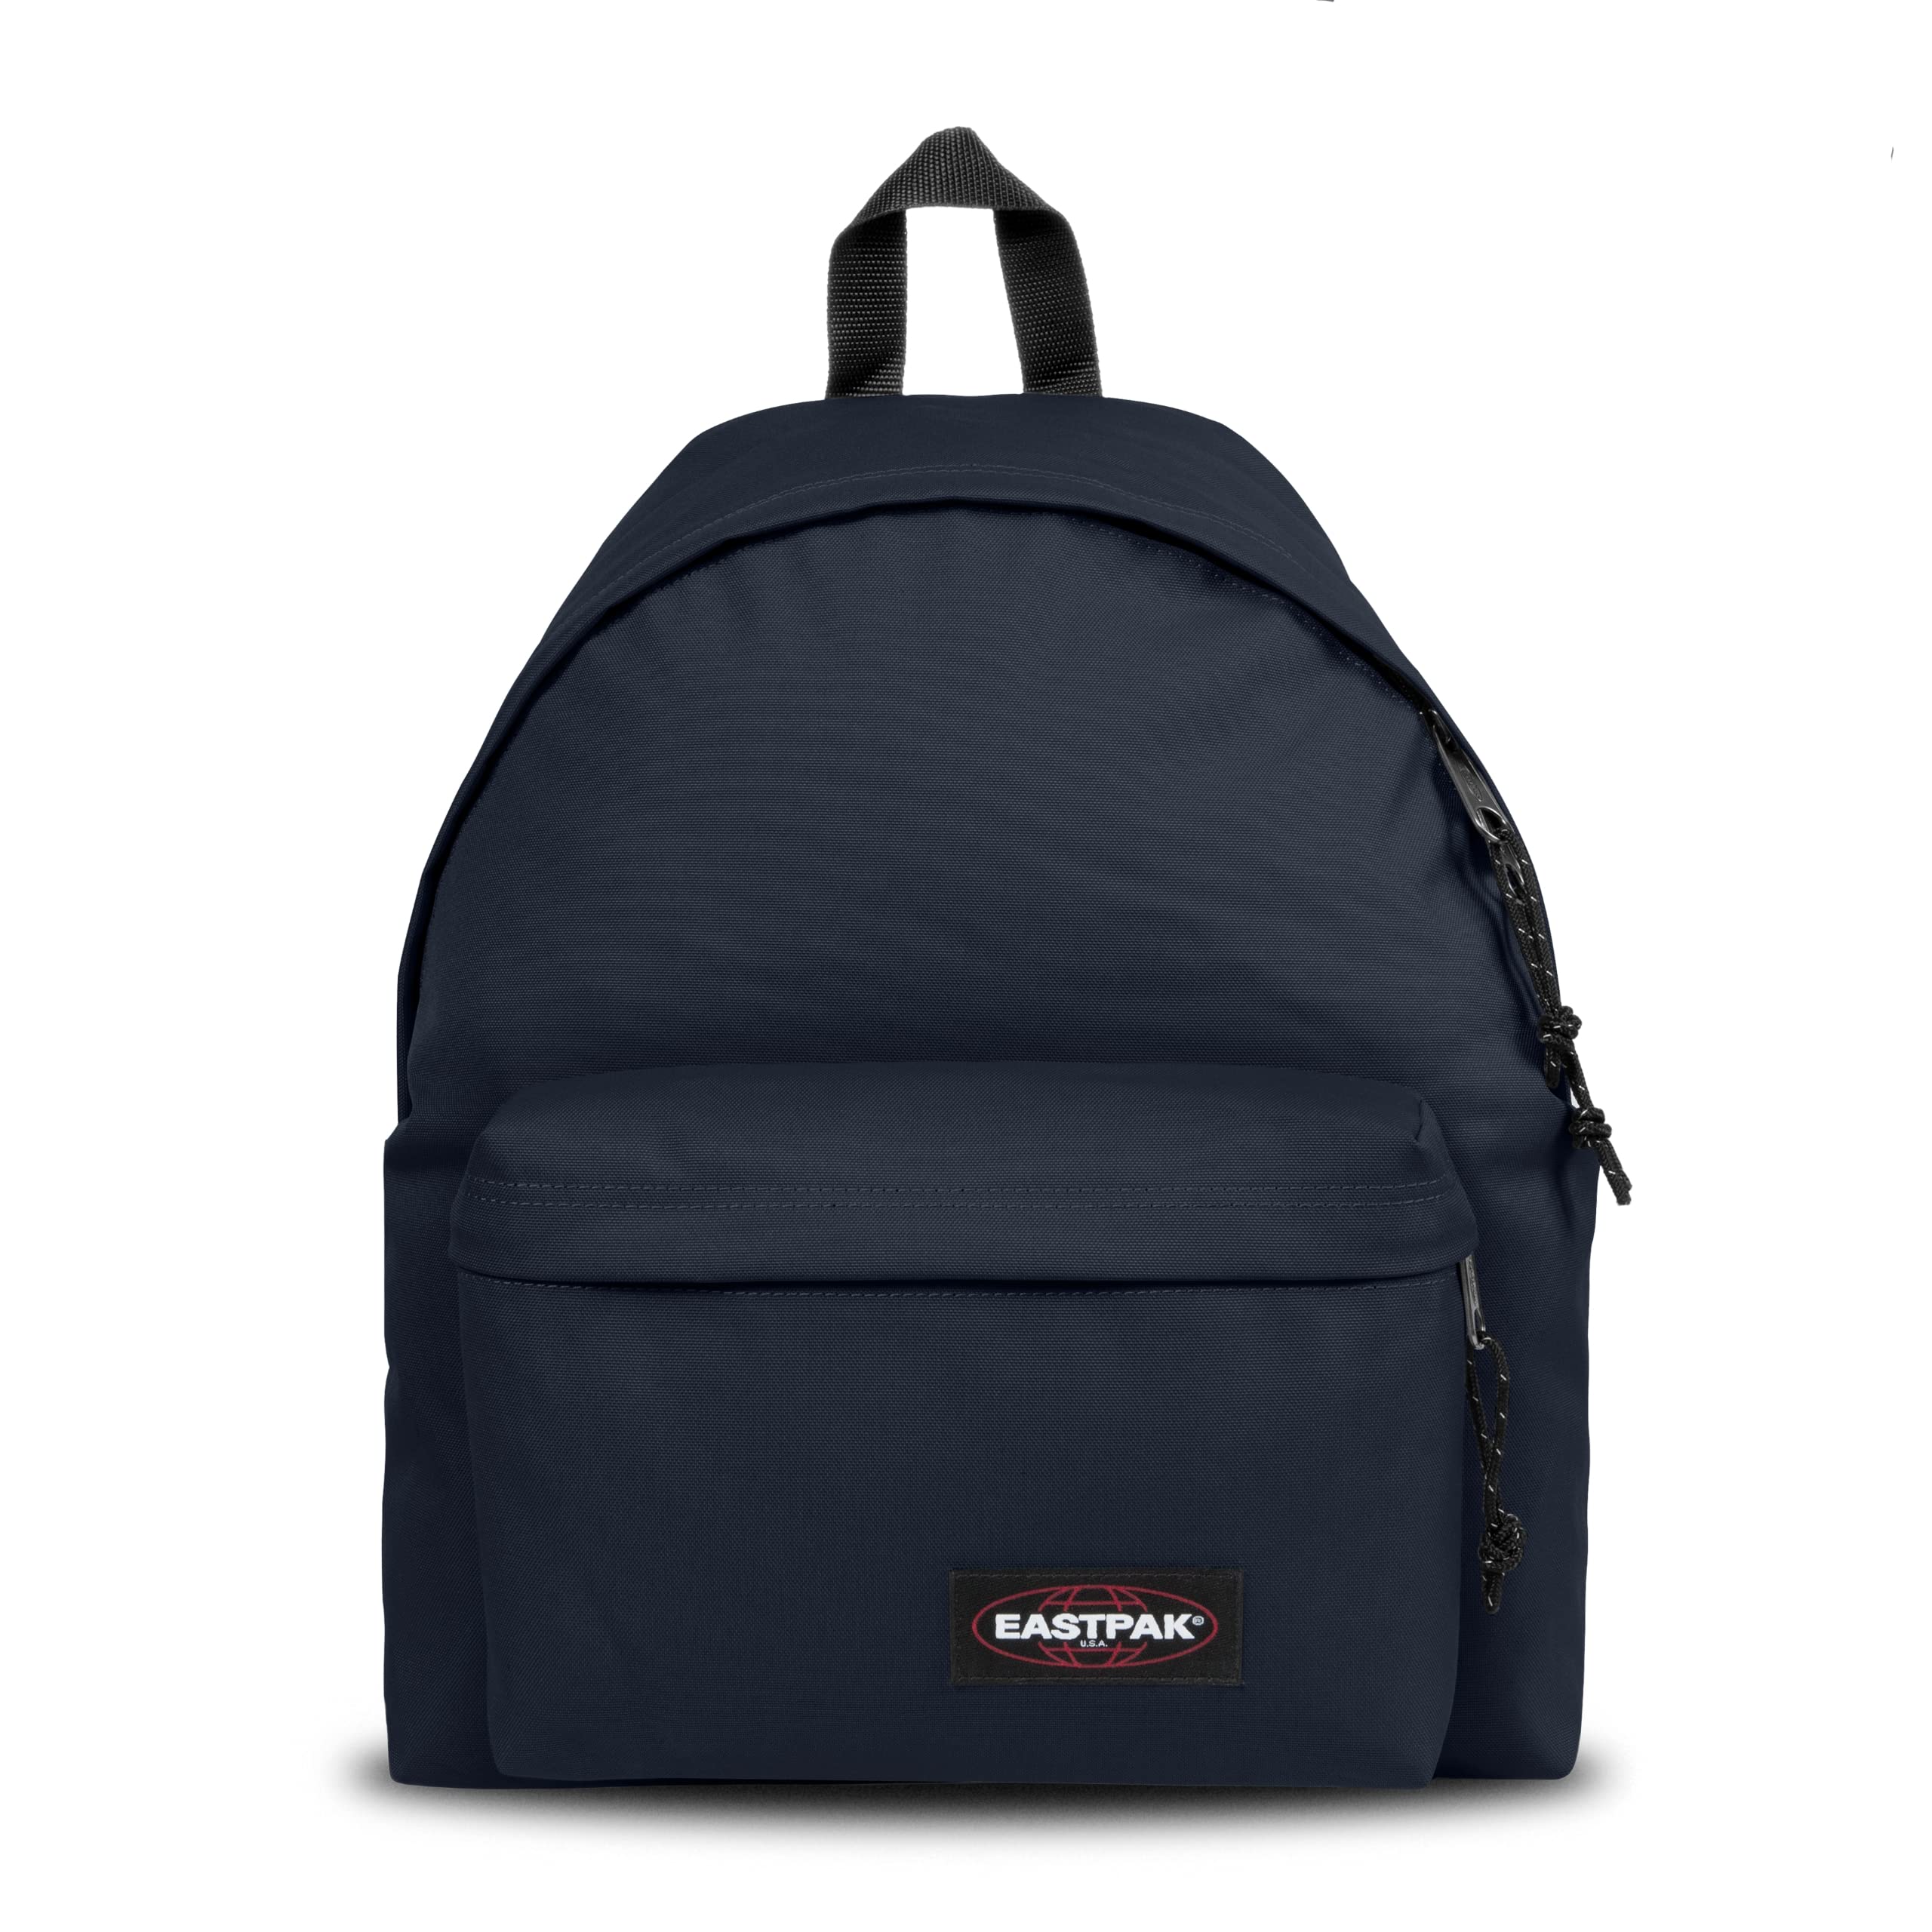 Eastpak Padded Pakr Backpack - Bag for Travel, Work, or Bookbag - Ultra Marine